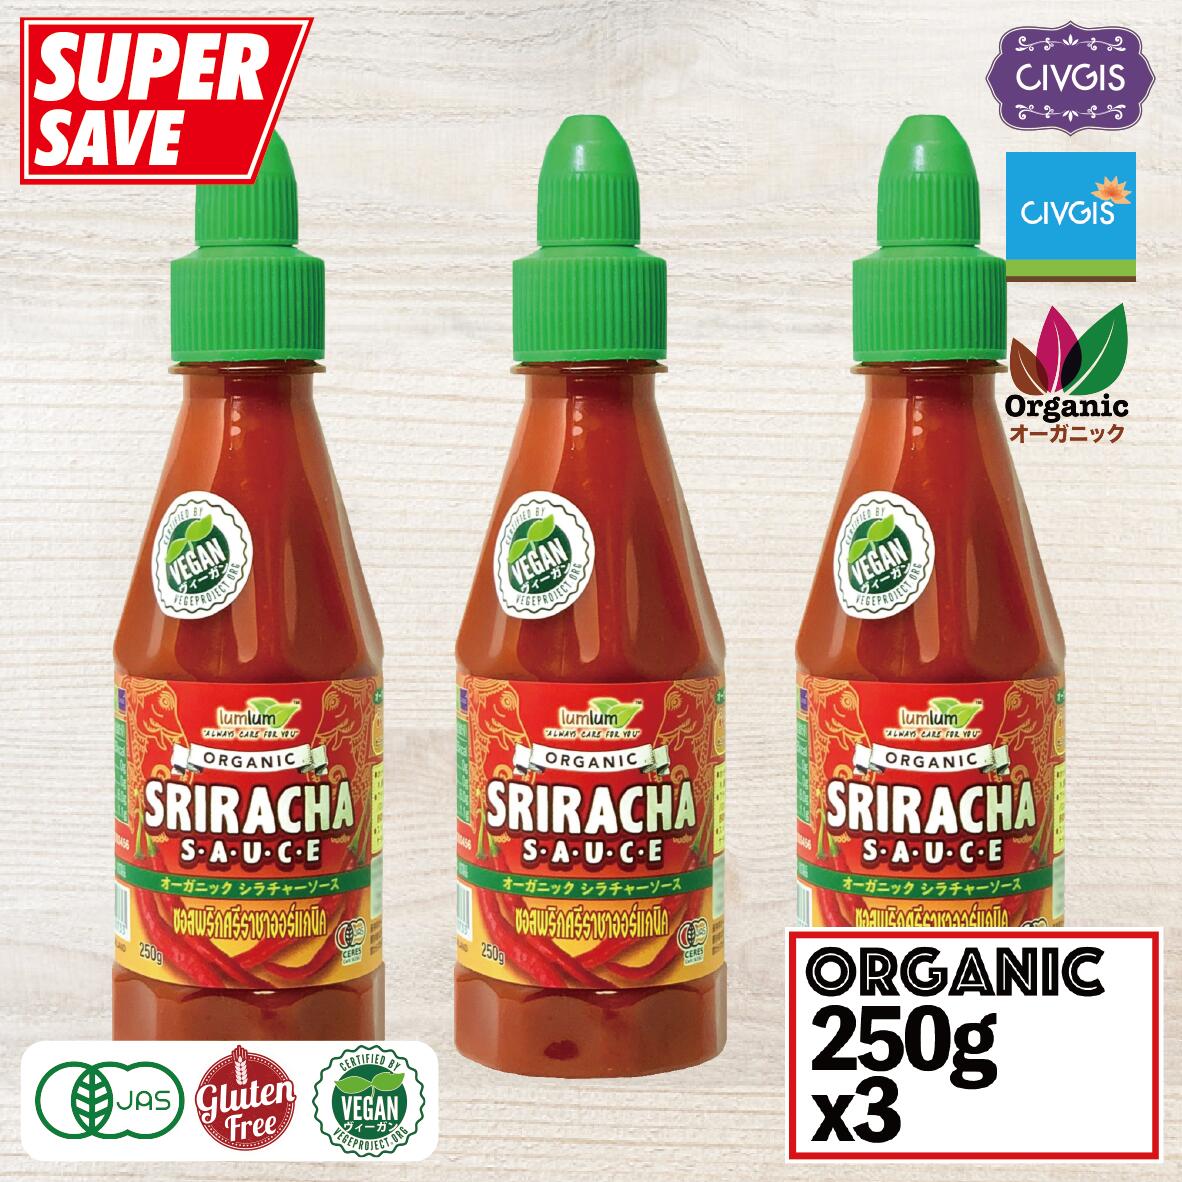 V`[\[X I[KjbN 250g X 3{ZbgyL@JASFEr[KEOet[zOrganic Sriracha Sauce 250g X 3PCSiV`\[X^X`\[X^X`[\[XjCIVGIS`uMX